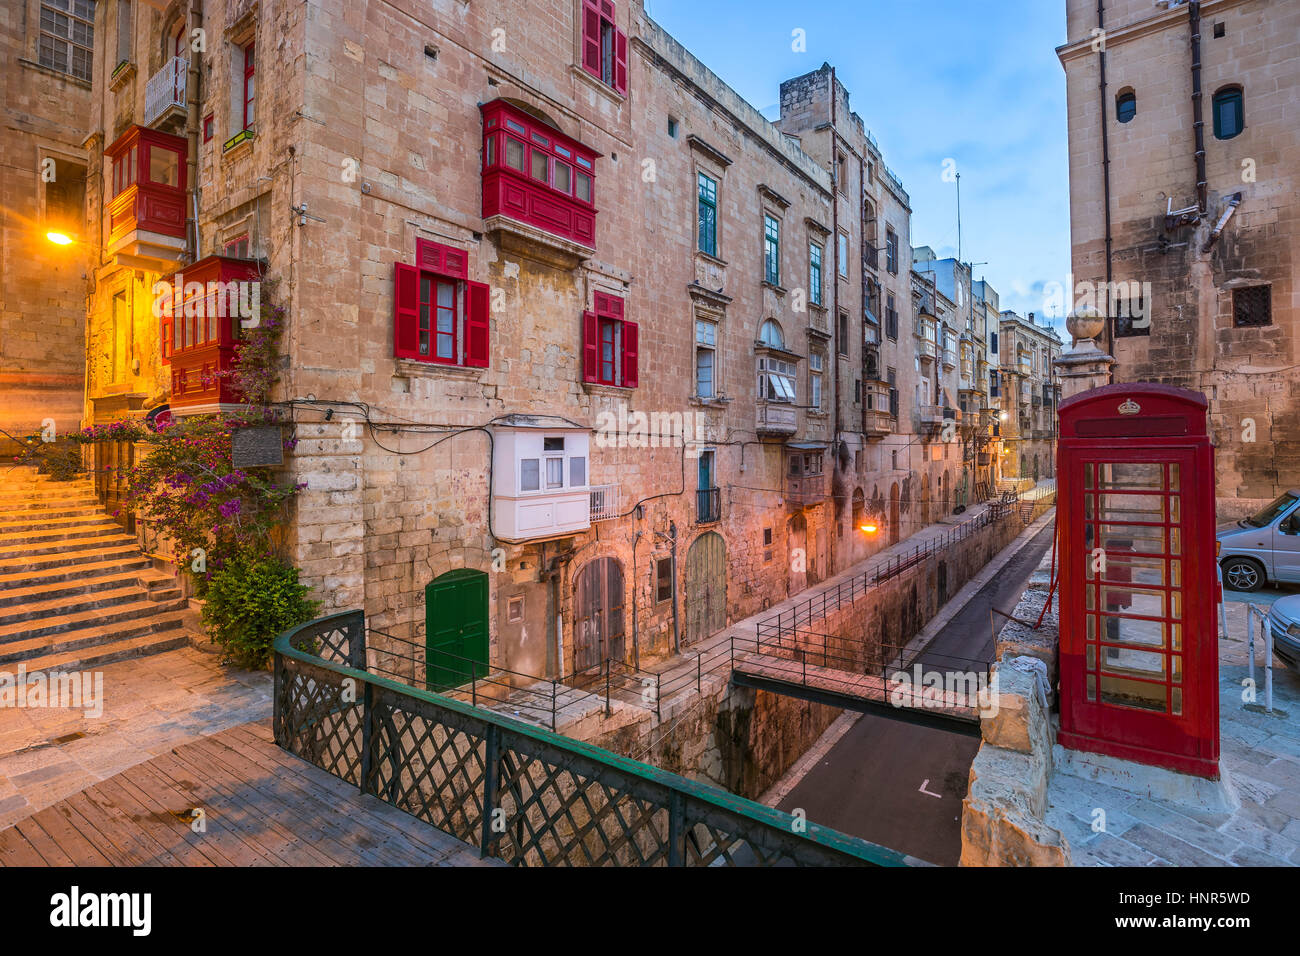 En Valletta, Malta - Rojo cuadro Teléfono de época británica y la pasarela roja tradicional y balcones en la antigua ciudad de La Valeta temprano en la mañana Foto de stock